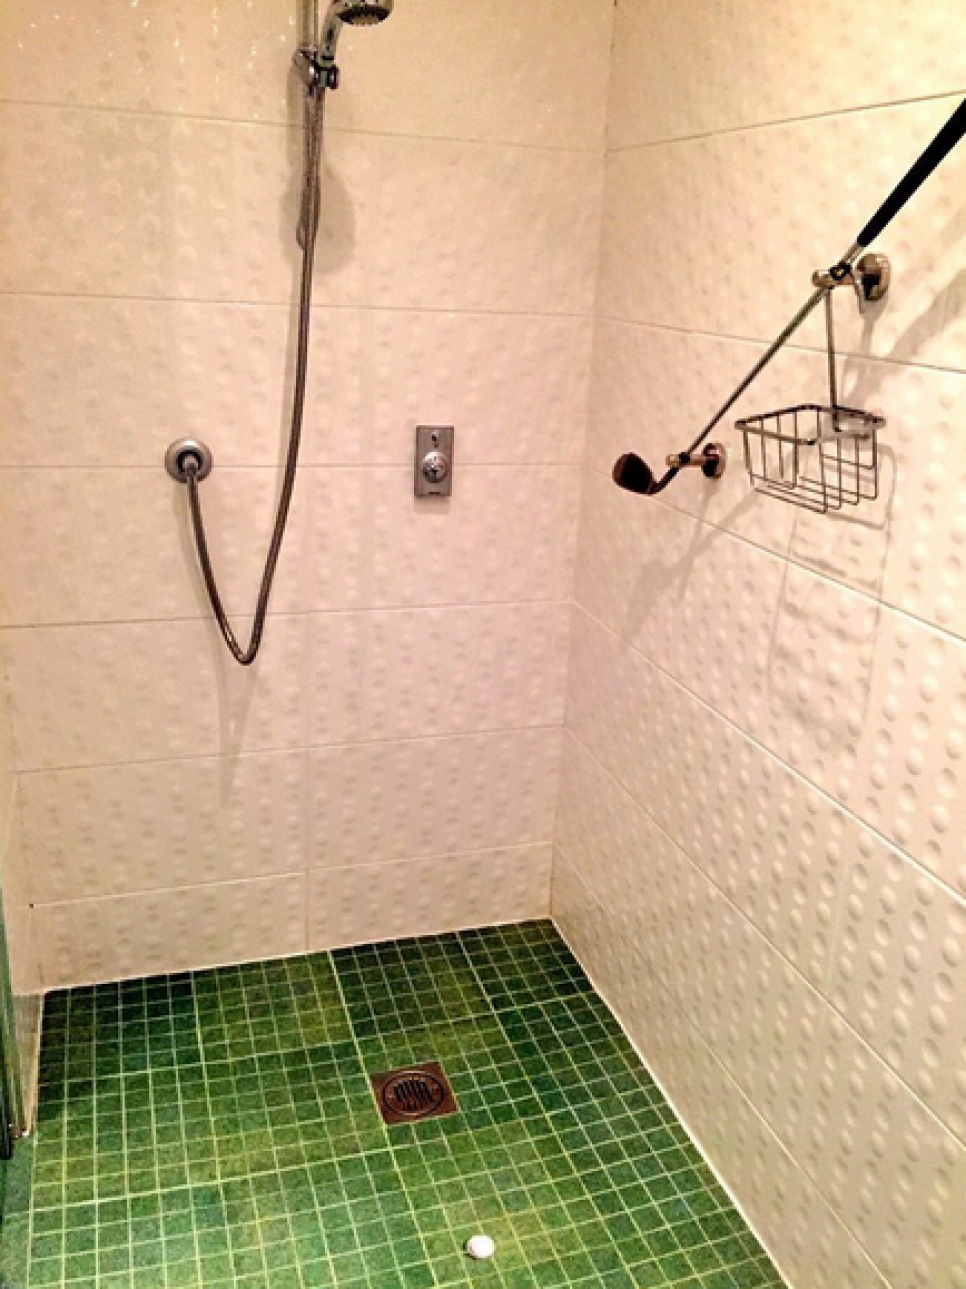 151120-golf-bathroom-shower.png